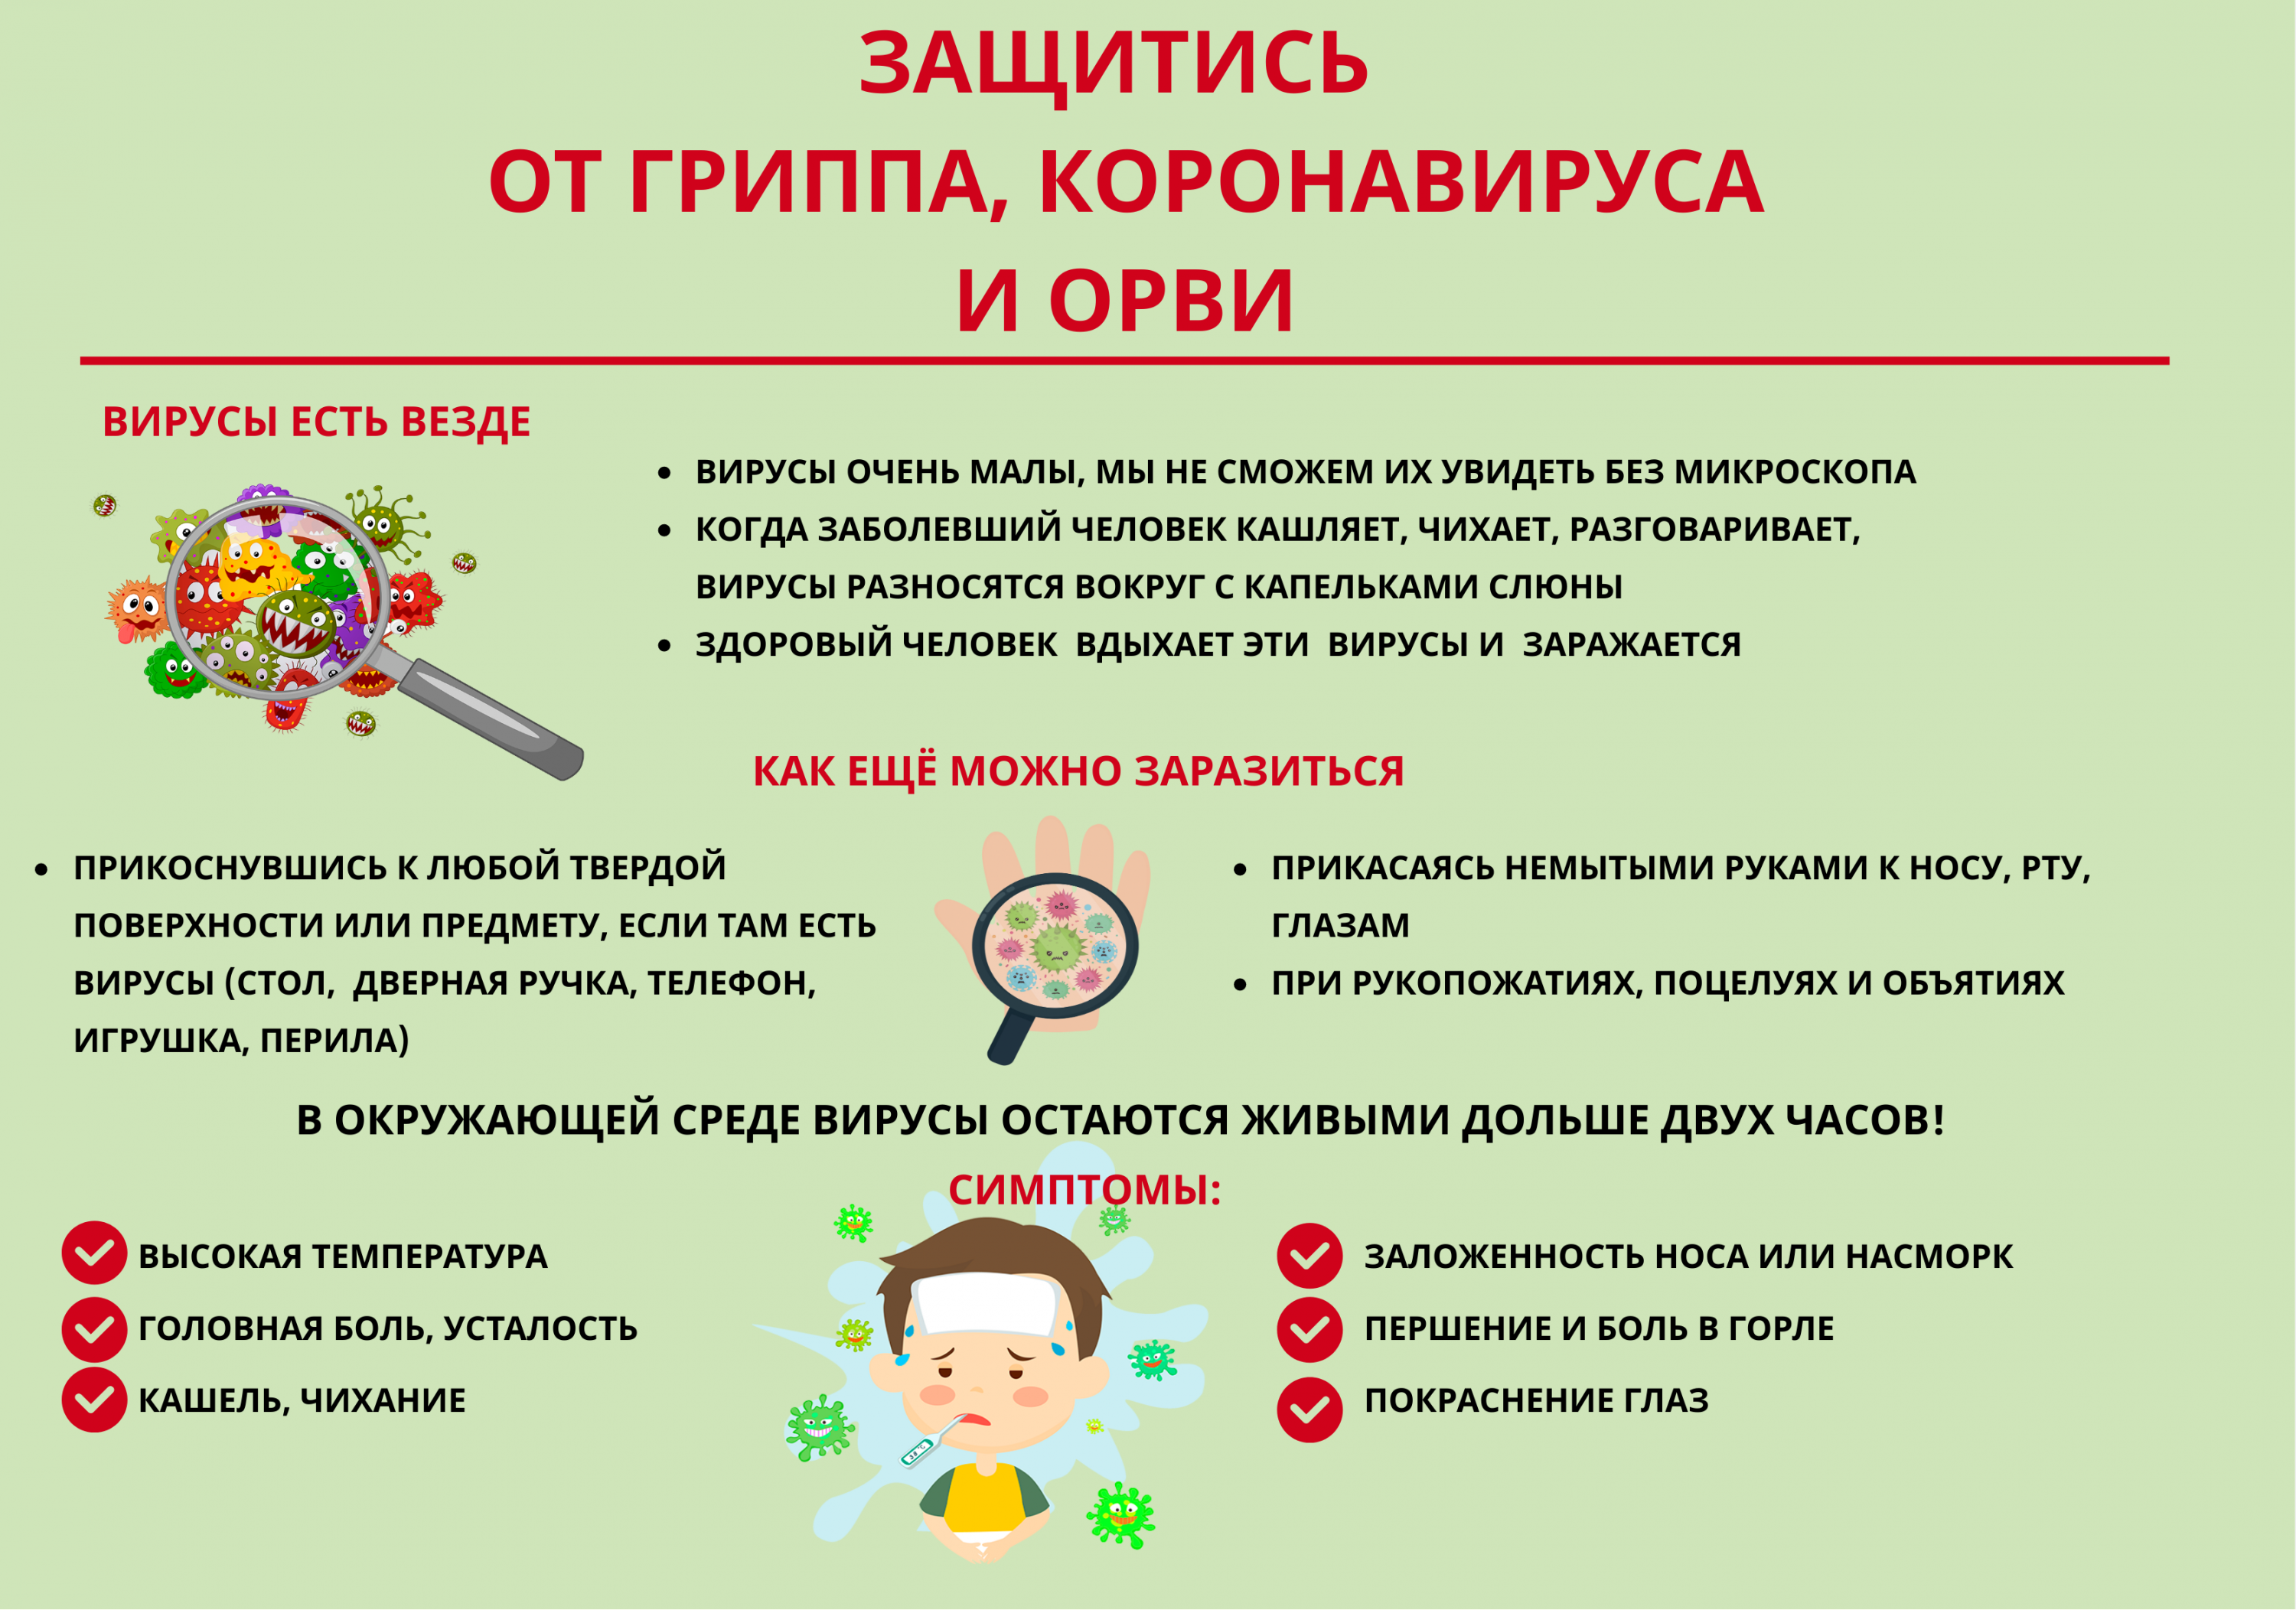 http://shkola-i-my.ucoz.ru/SLUZHBI_OO/64fc0f251df8b9f1e00a4469a6b8fce5.png